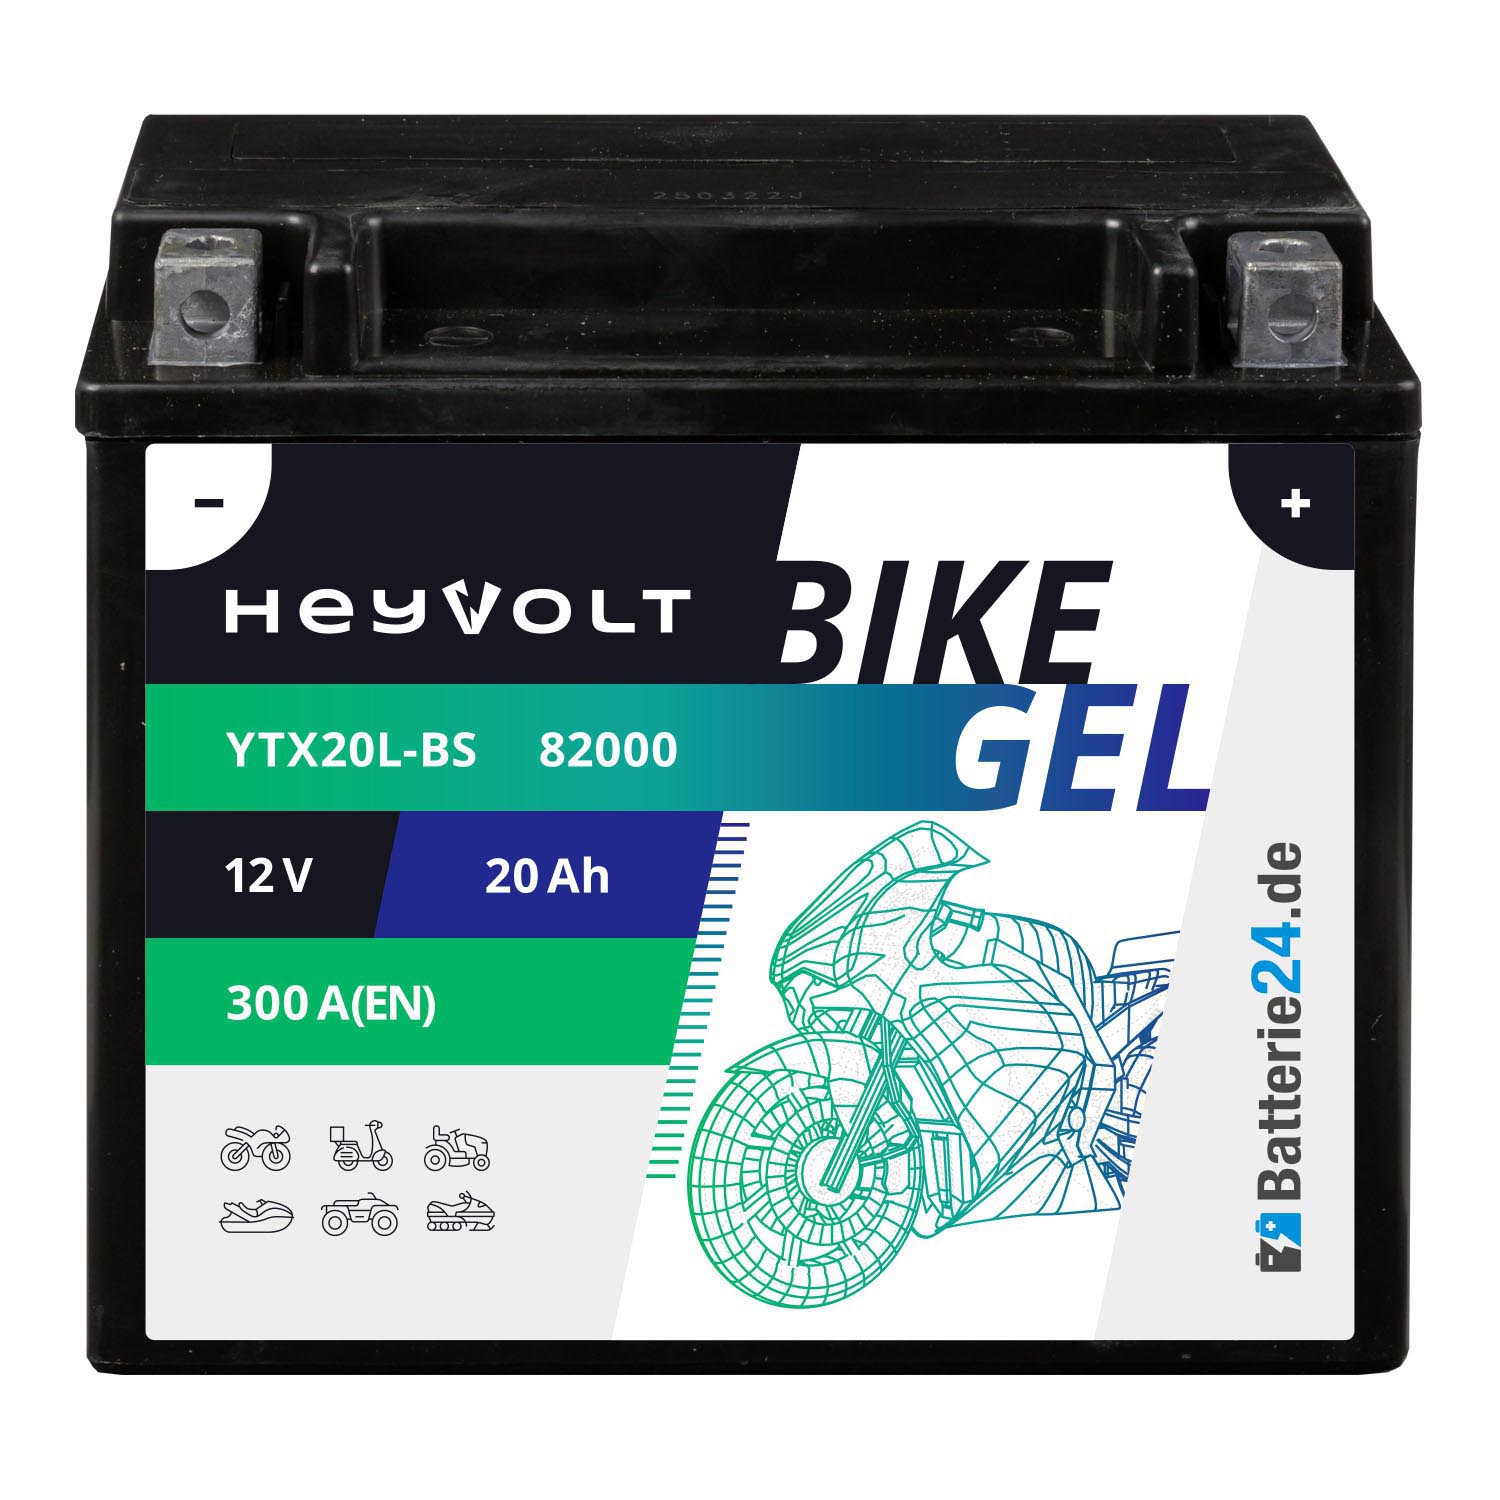 HeyVolt BIKE GEL Motorradbatterie YTX20L-BS 82000 12V 20Ah